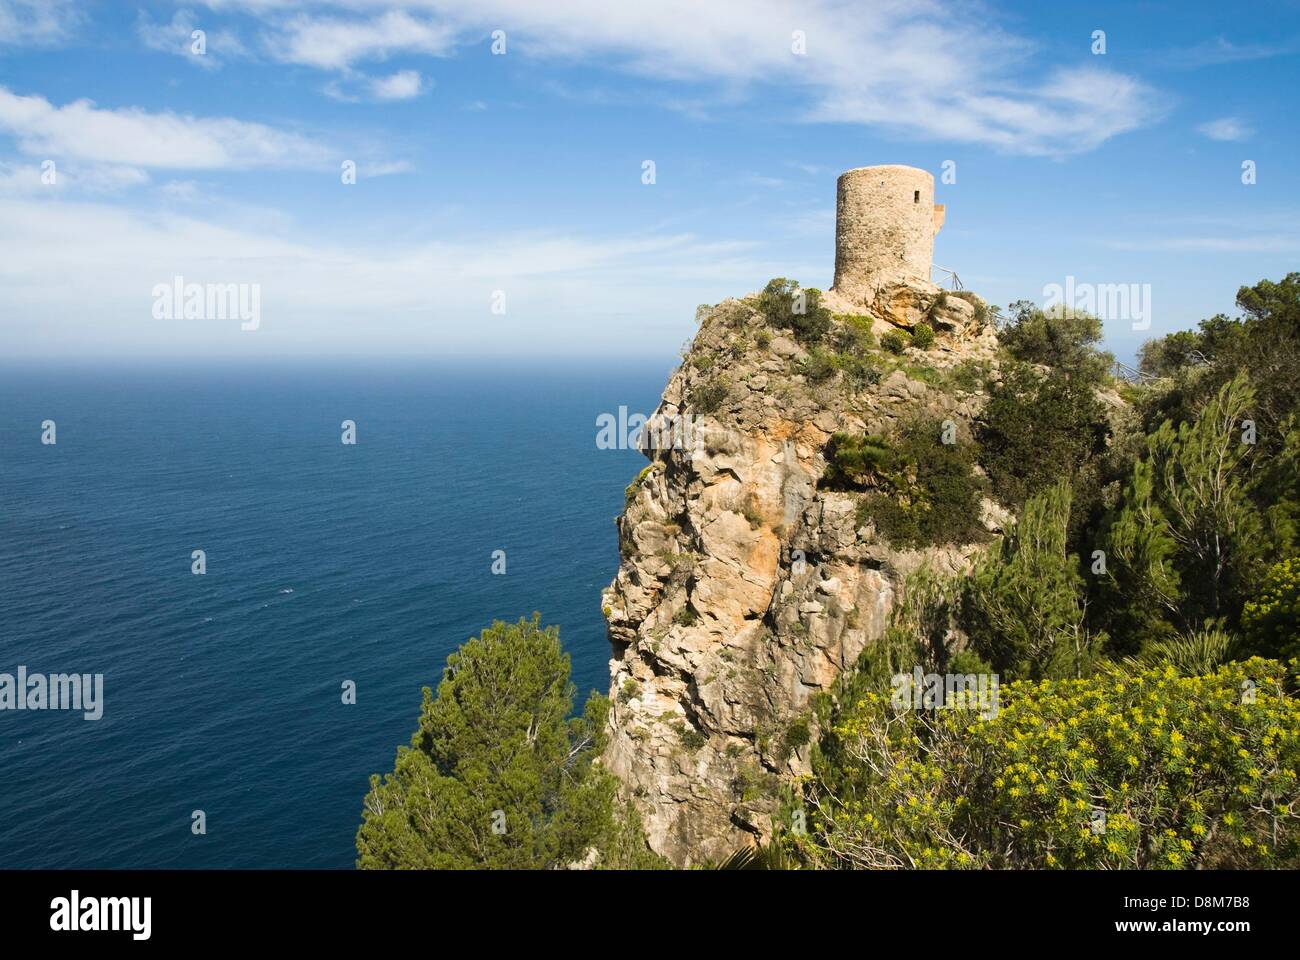 Torre de seis Animes near Banyalbufar, Mallorca Stock Photo